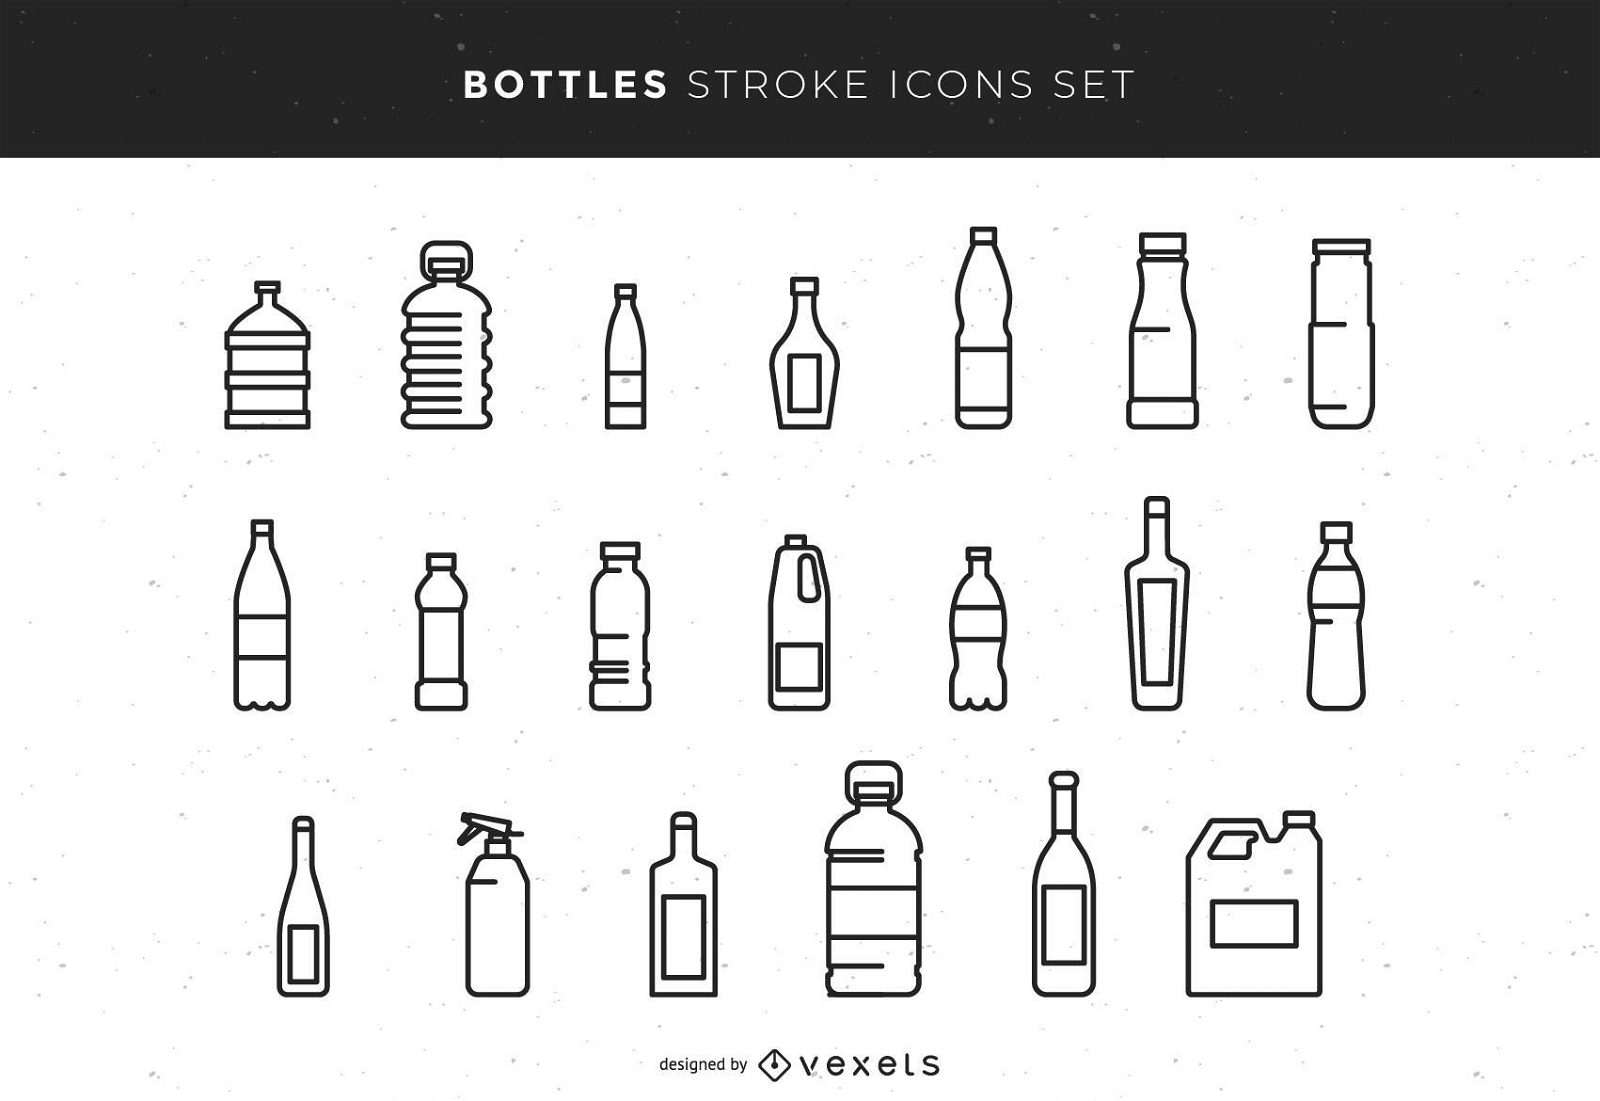 Bottles Stroke Icons Set